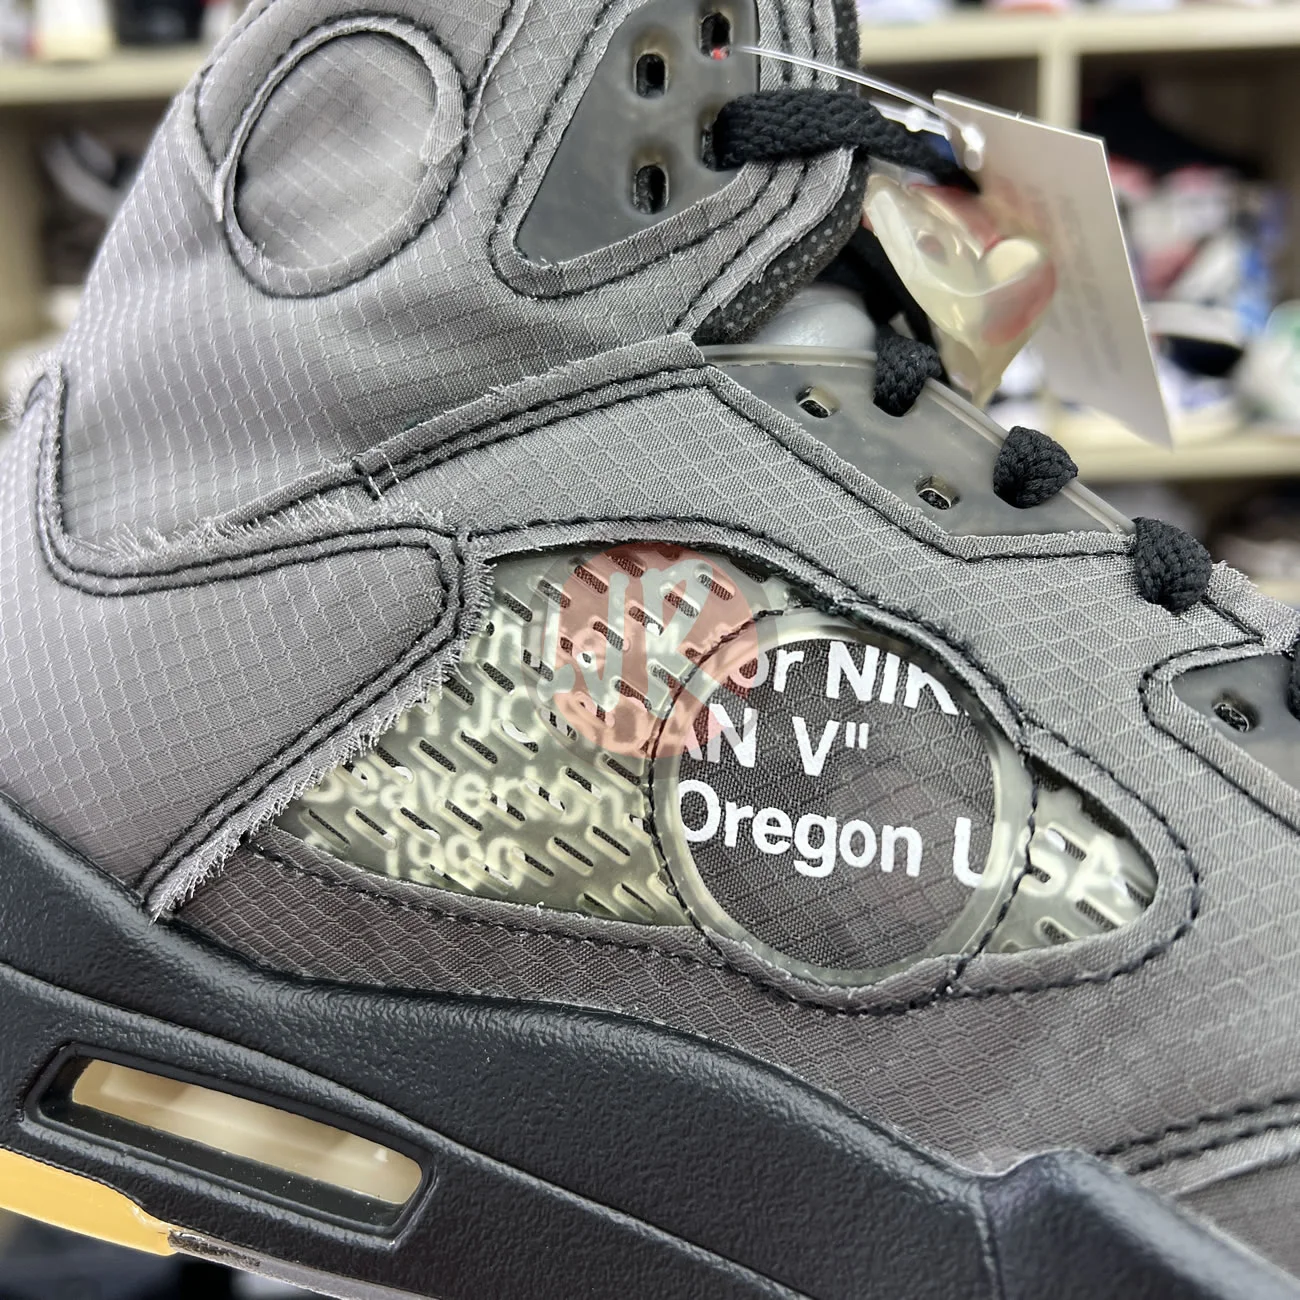 Air Jordan 5 Retro Off White Muslin Ct8480 001 Ljr Sneakers (10) - bc-ljr.net